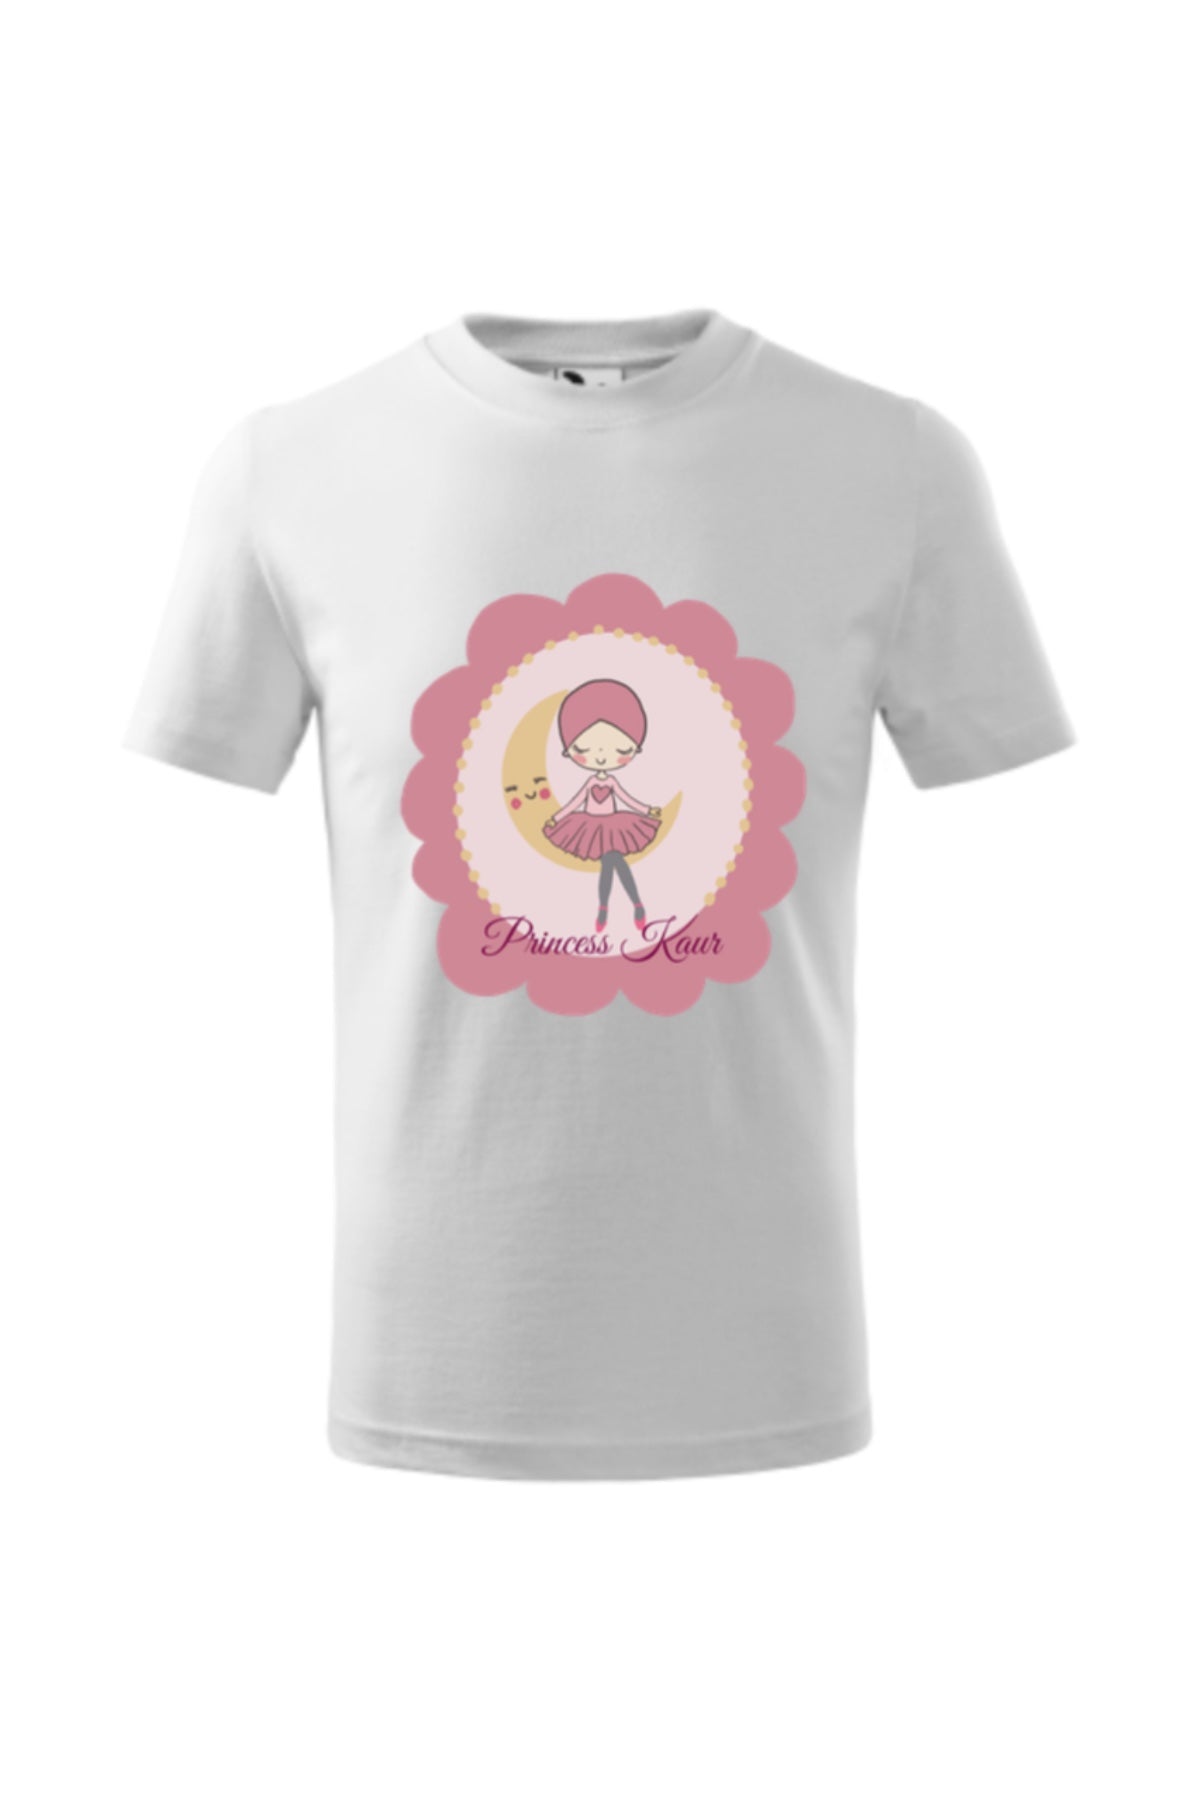 Princess Kaur T-shirt